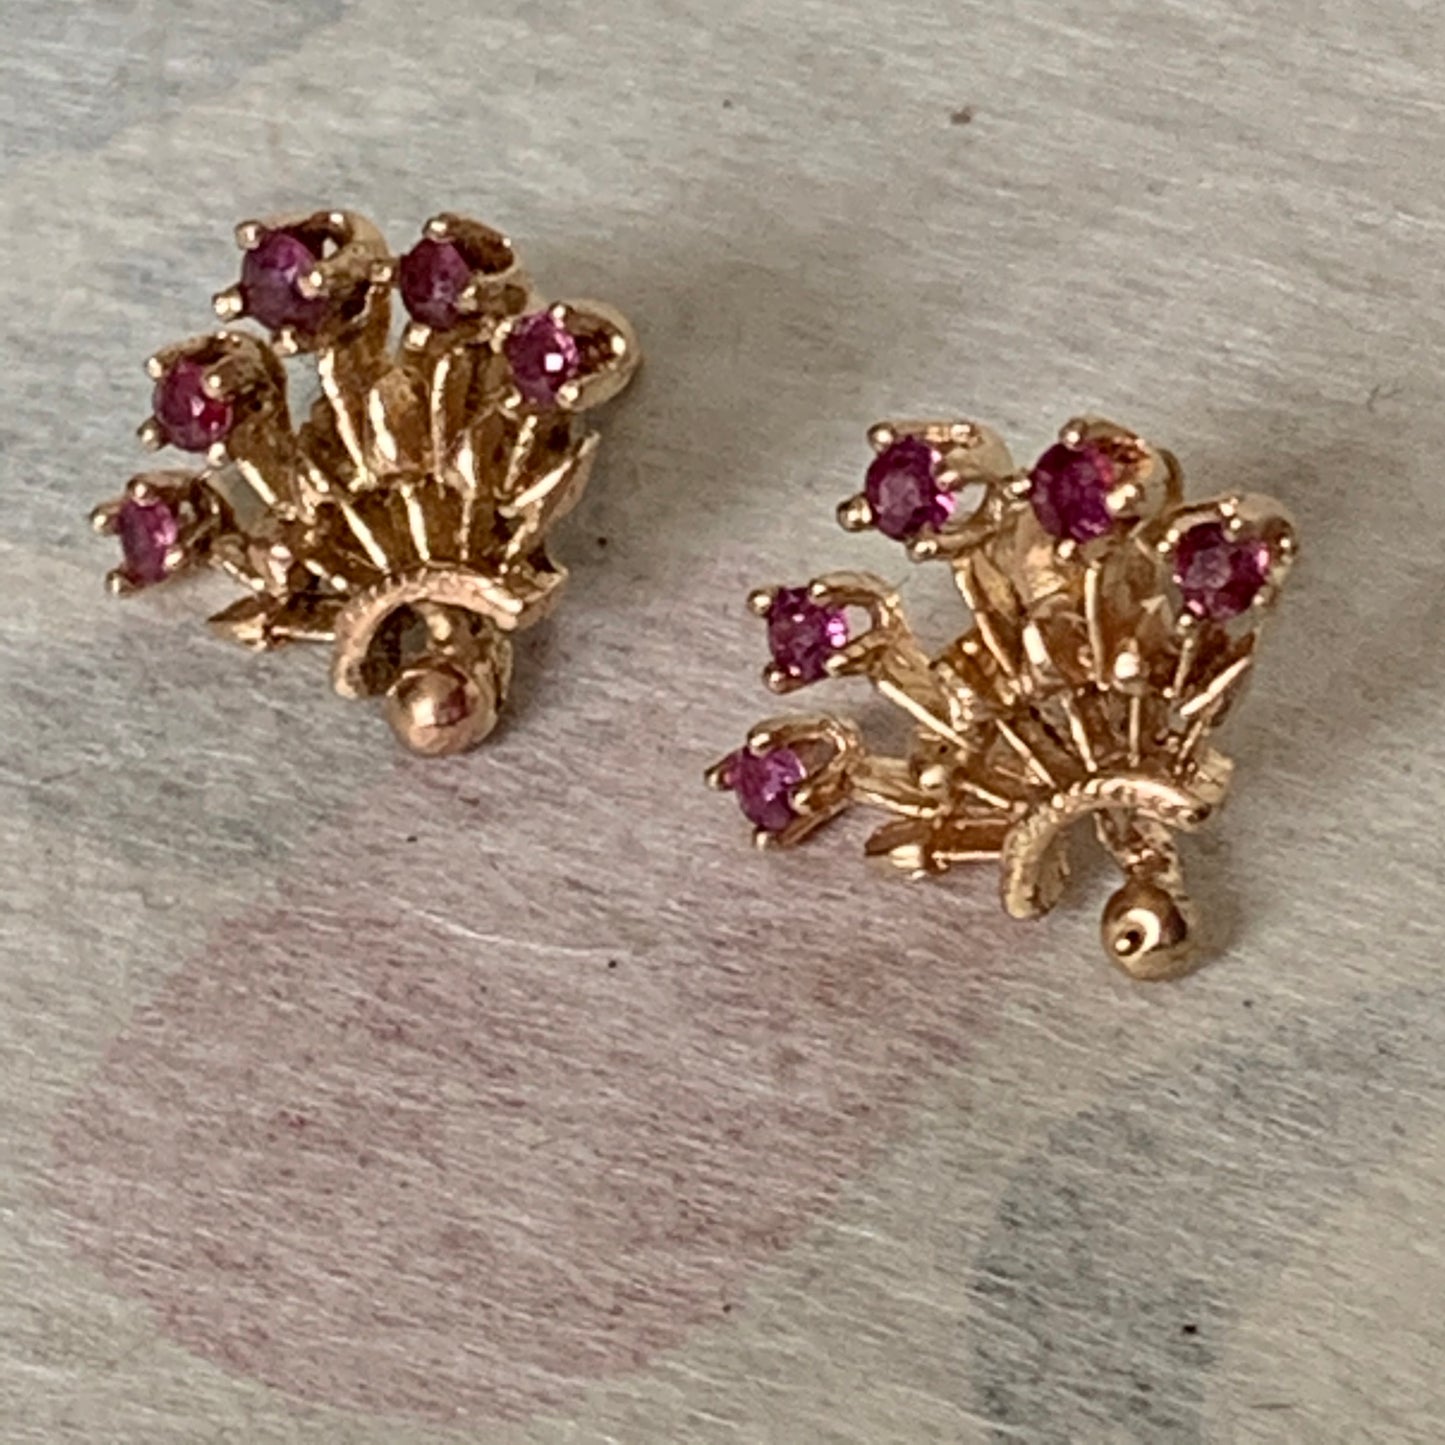 A pair of Ruby earrings